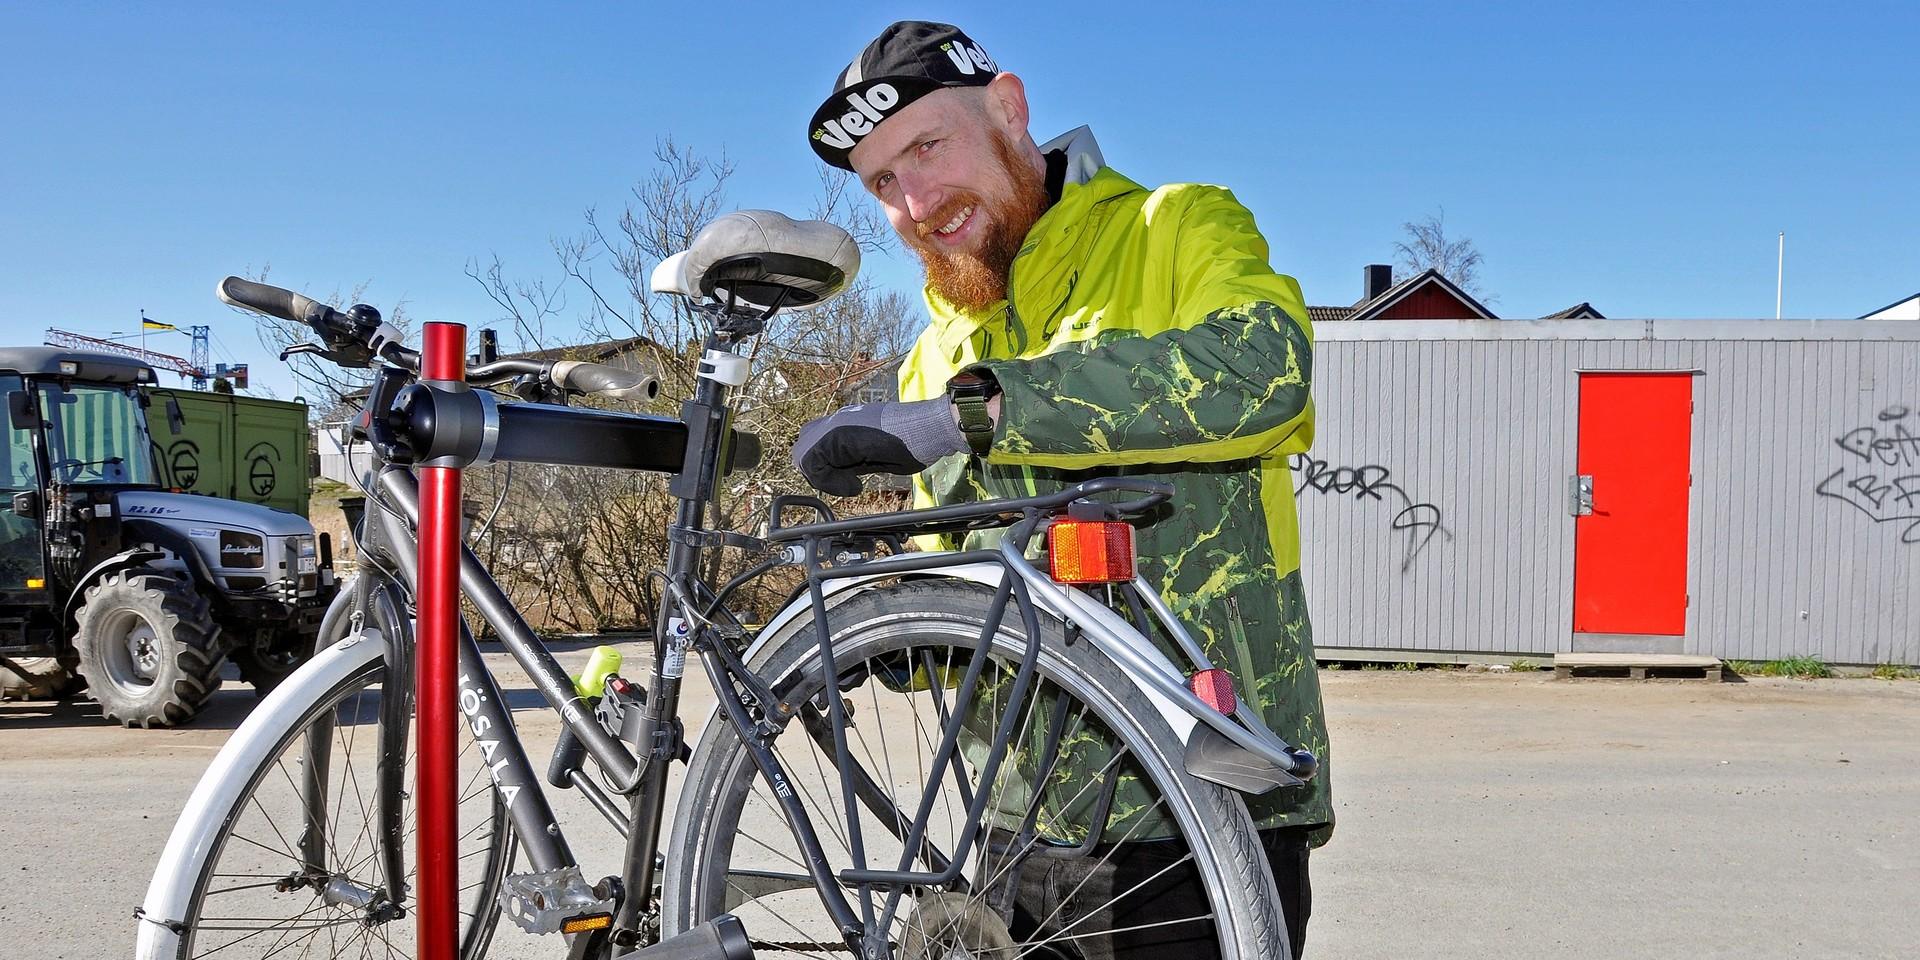 ”Huvudsaken är att folk cyklar och för det behöver prylarna fixas”, säger Even Hovensjö som cyklar hem till sina kunder.